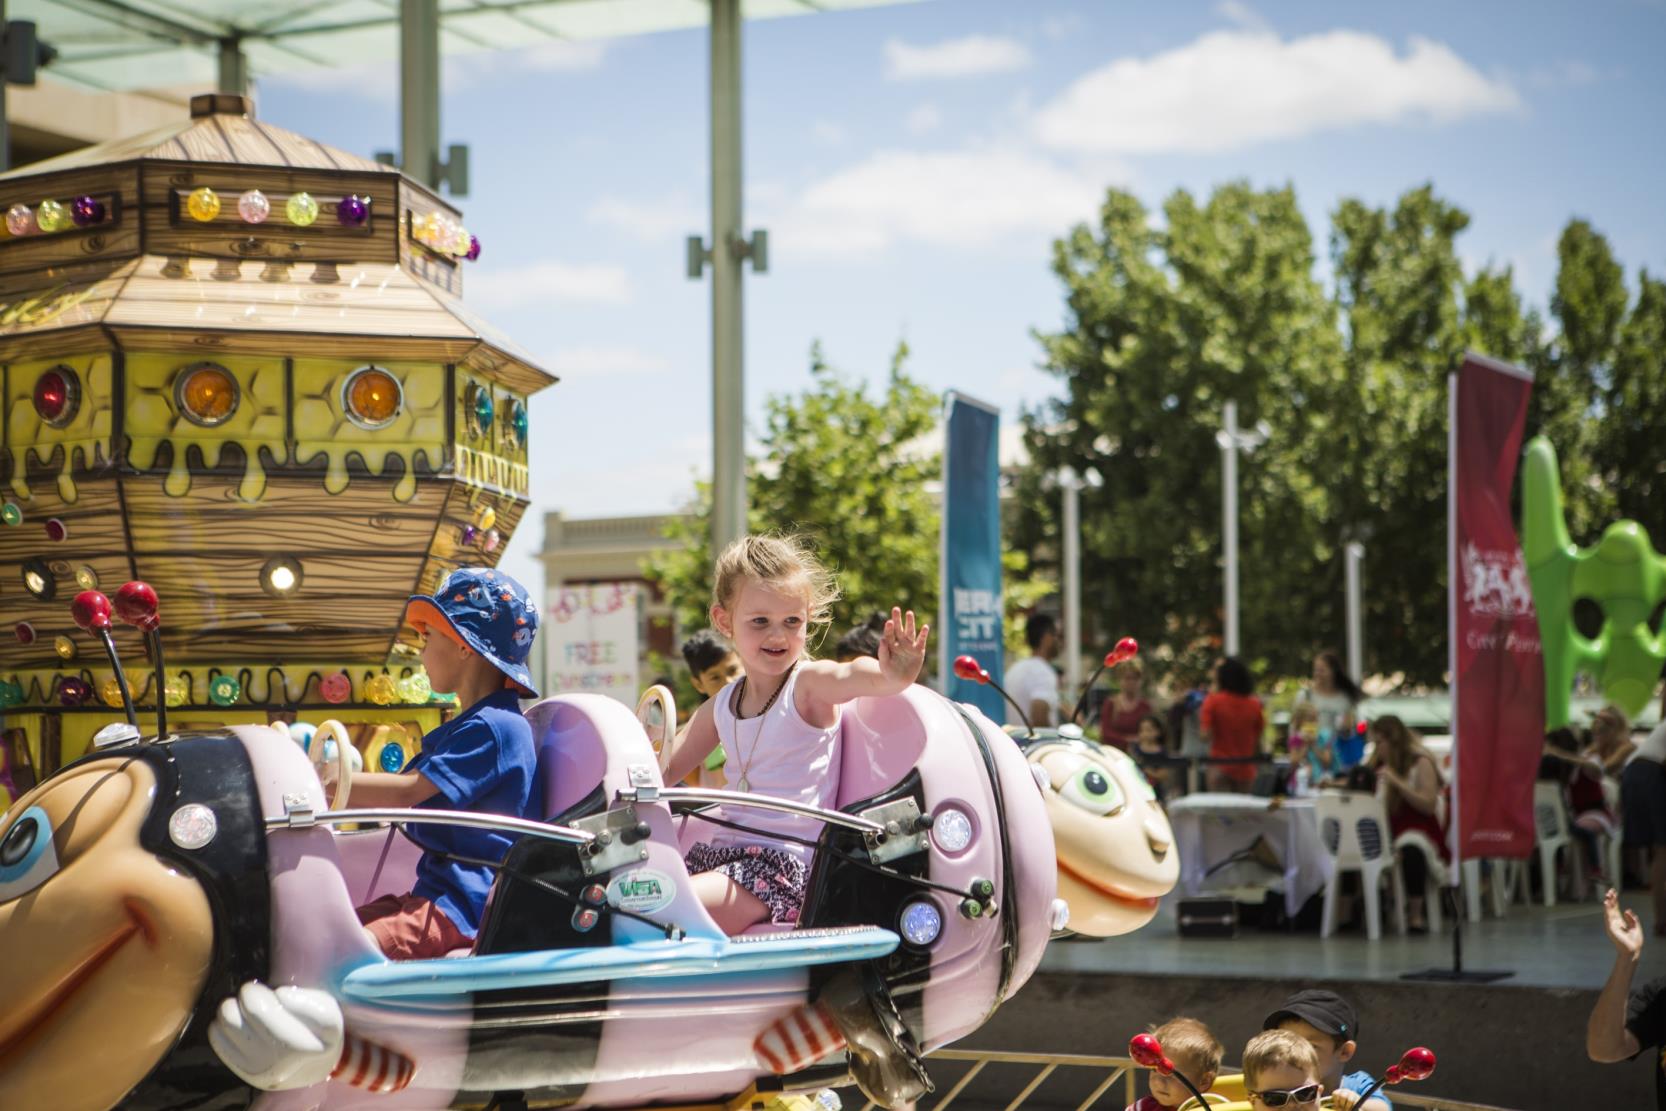 Little girl on carnival ride